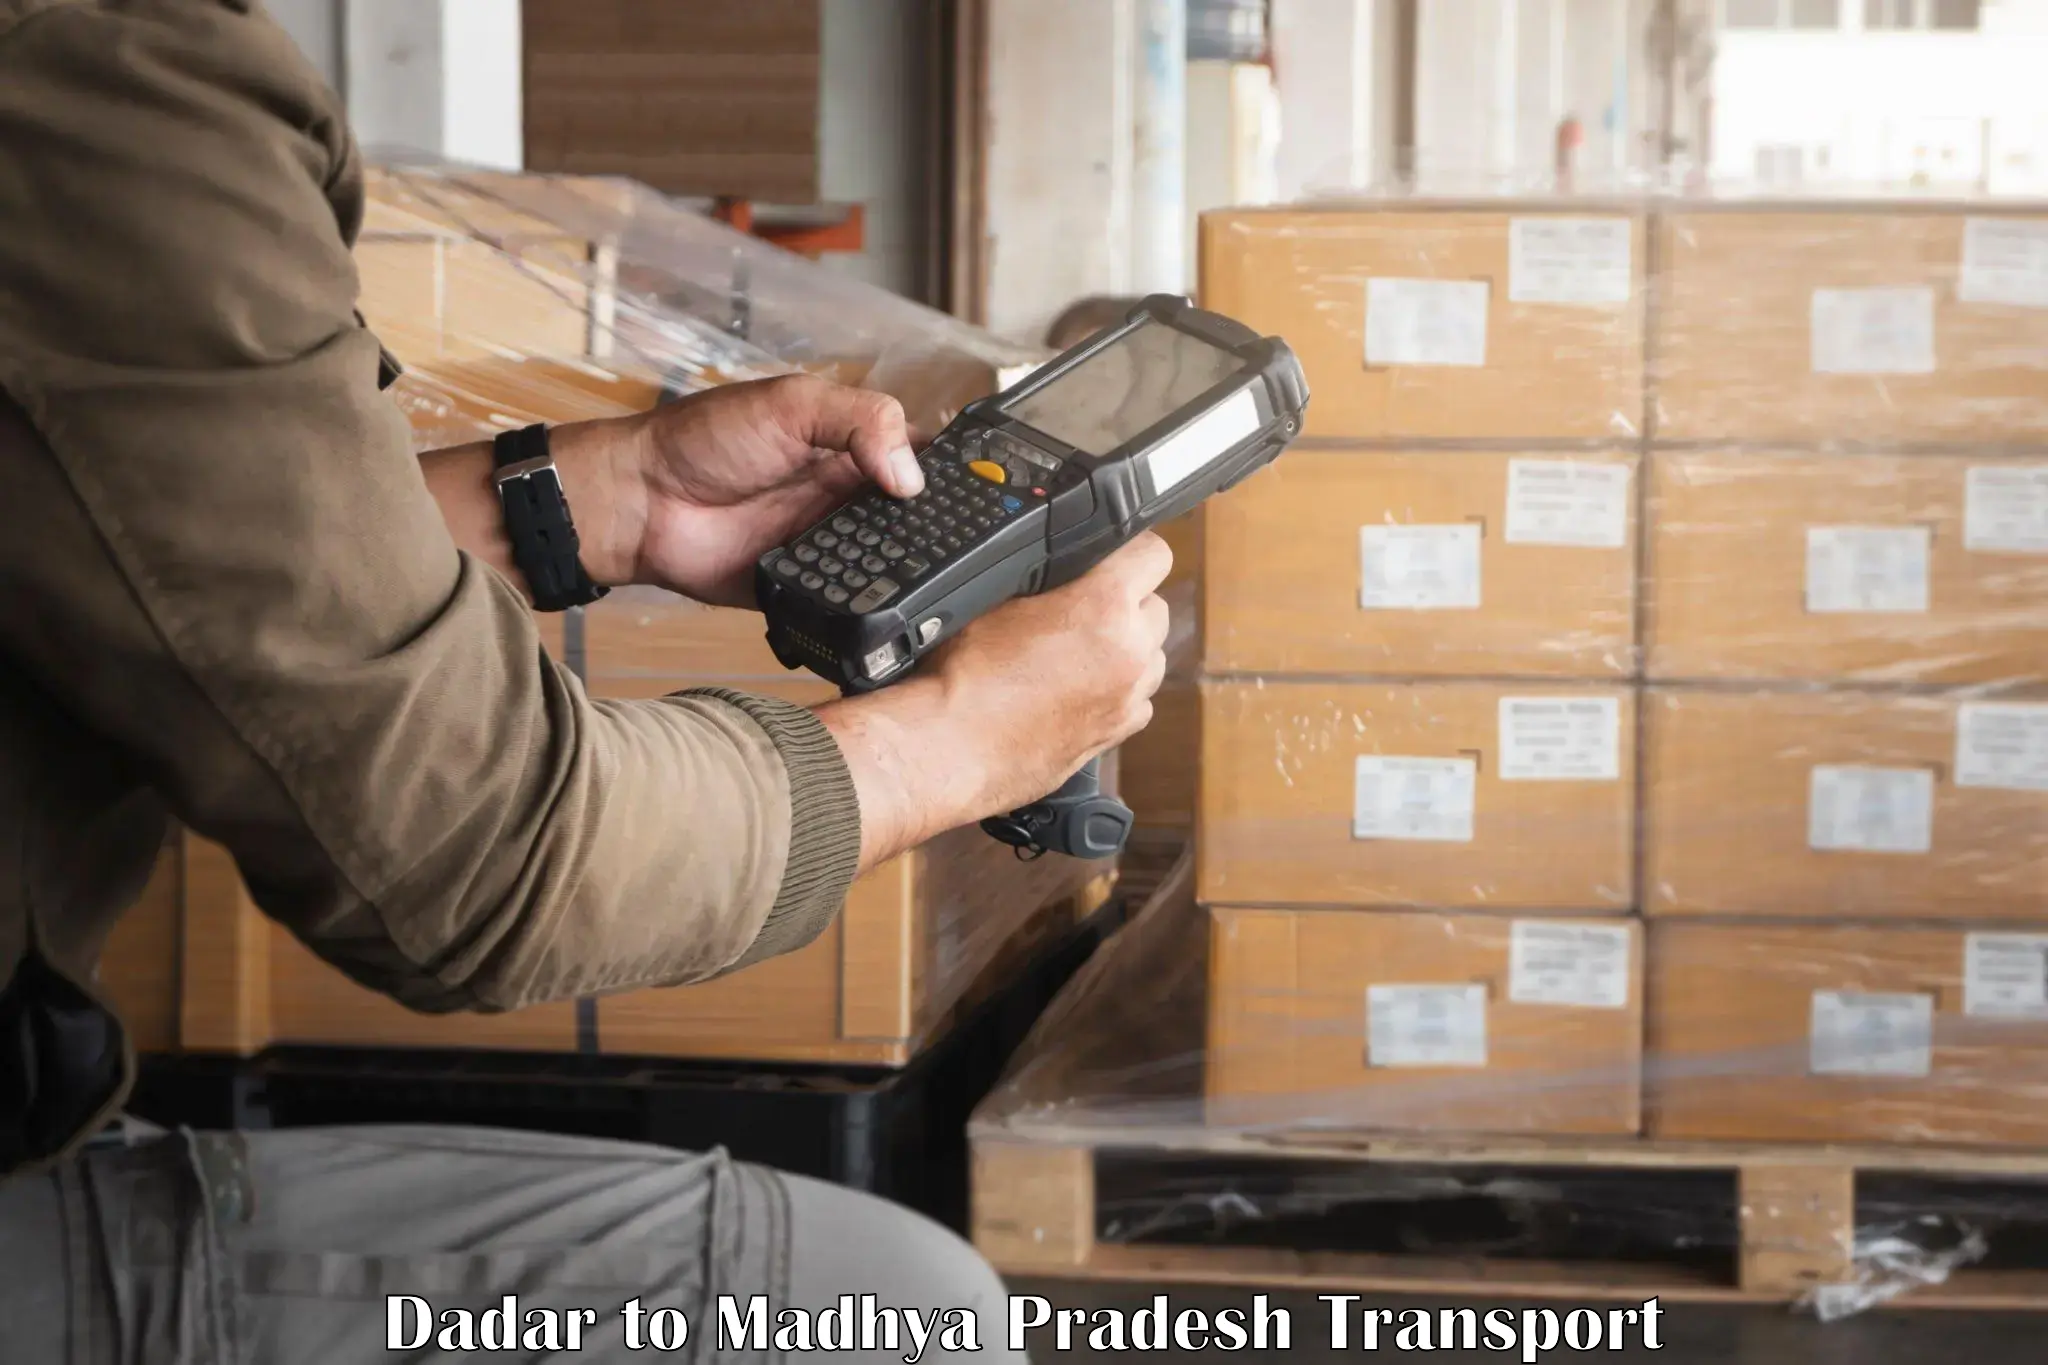 Online transport service Dadar to Athner